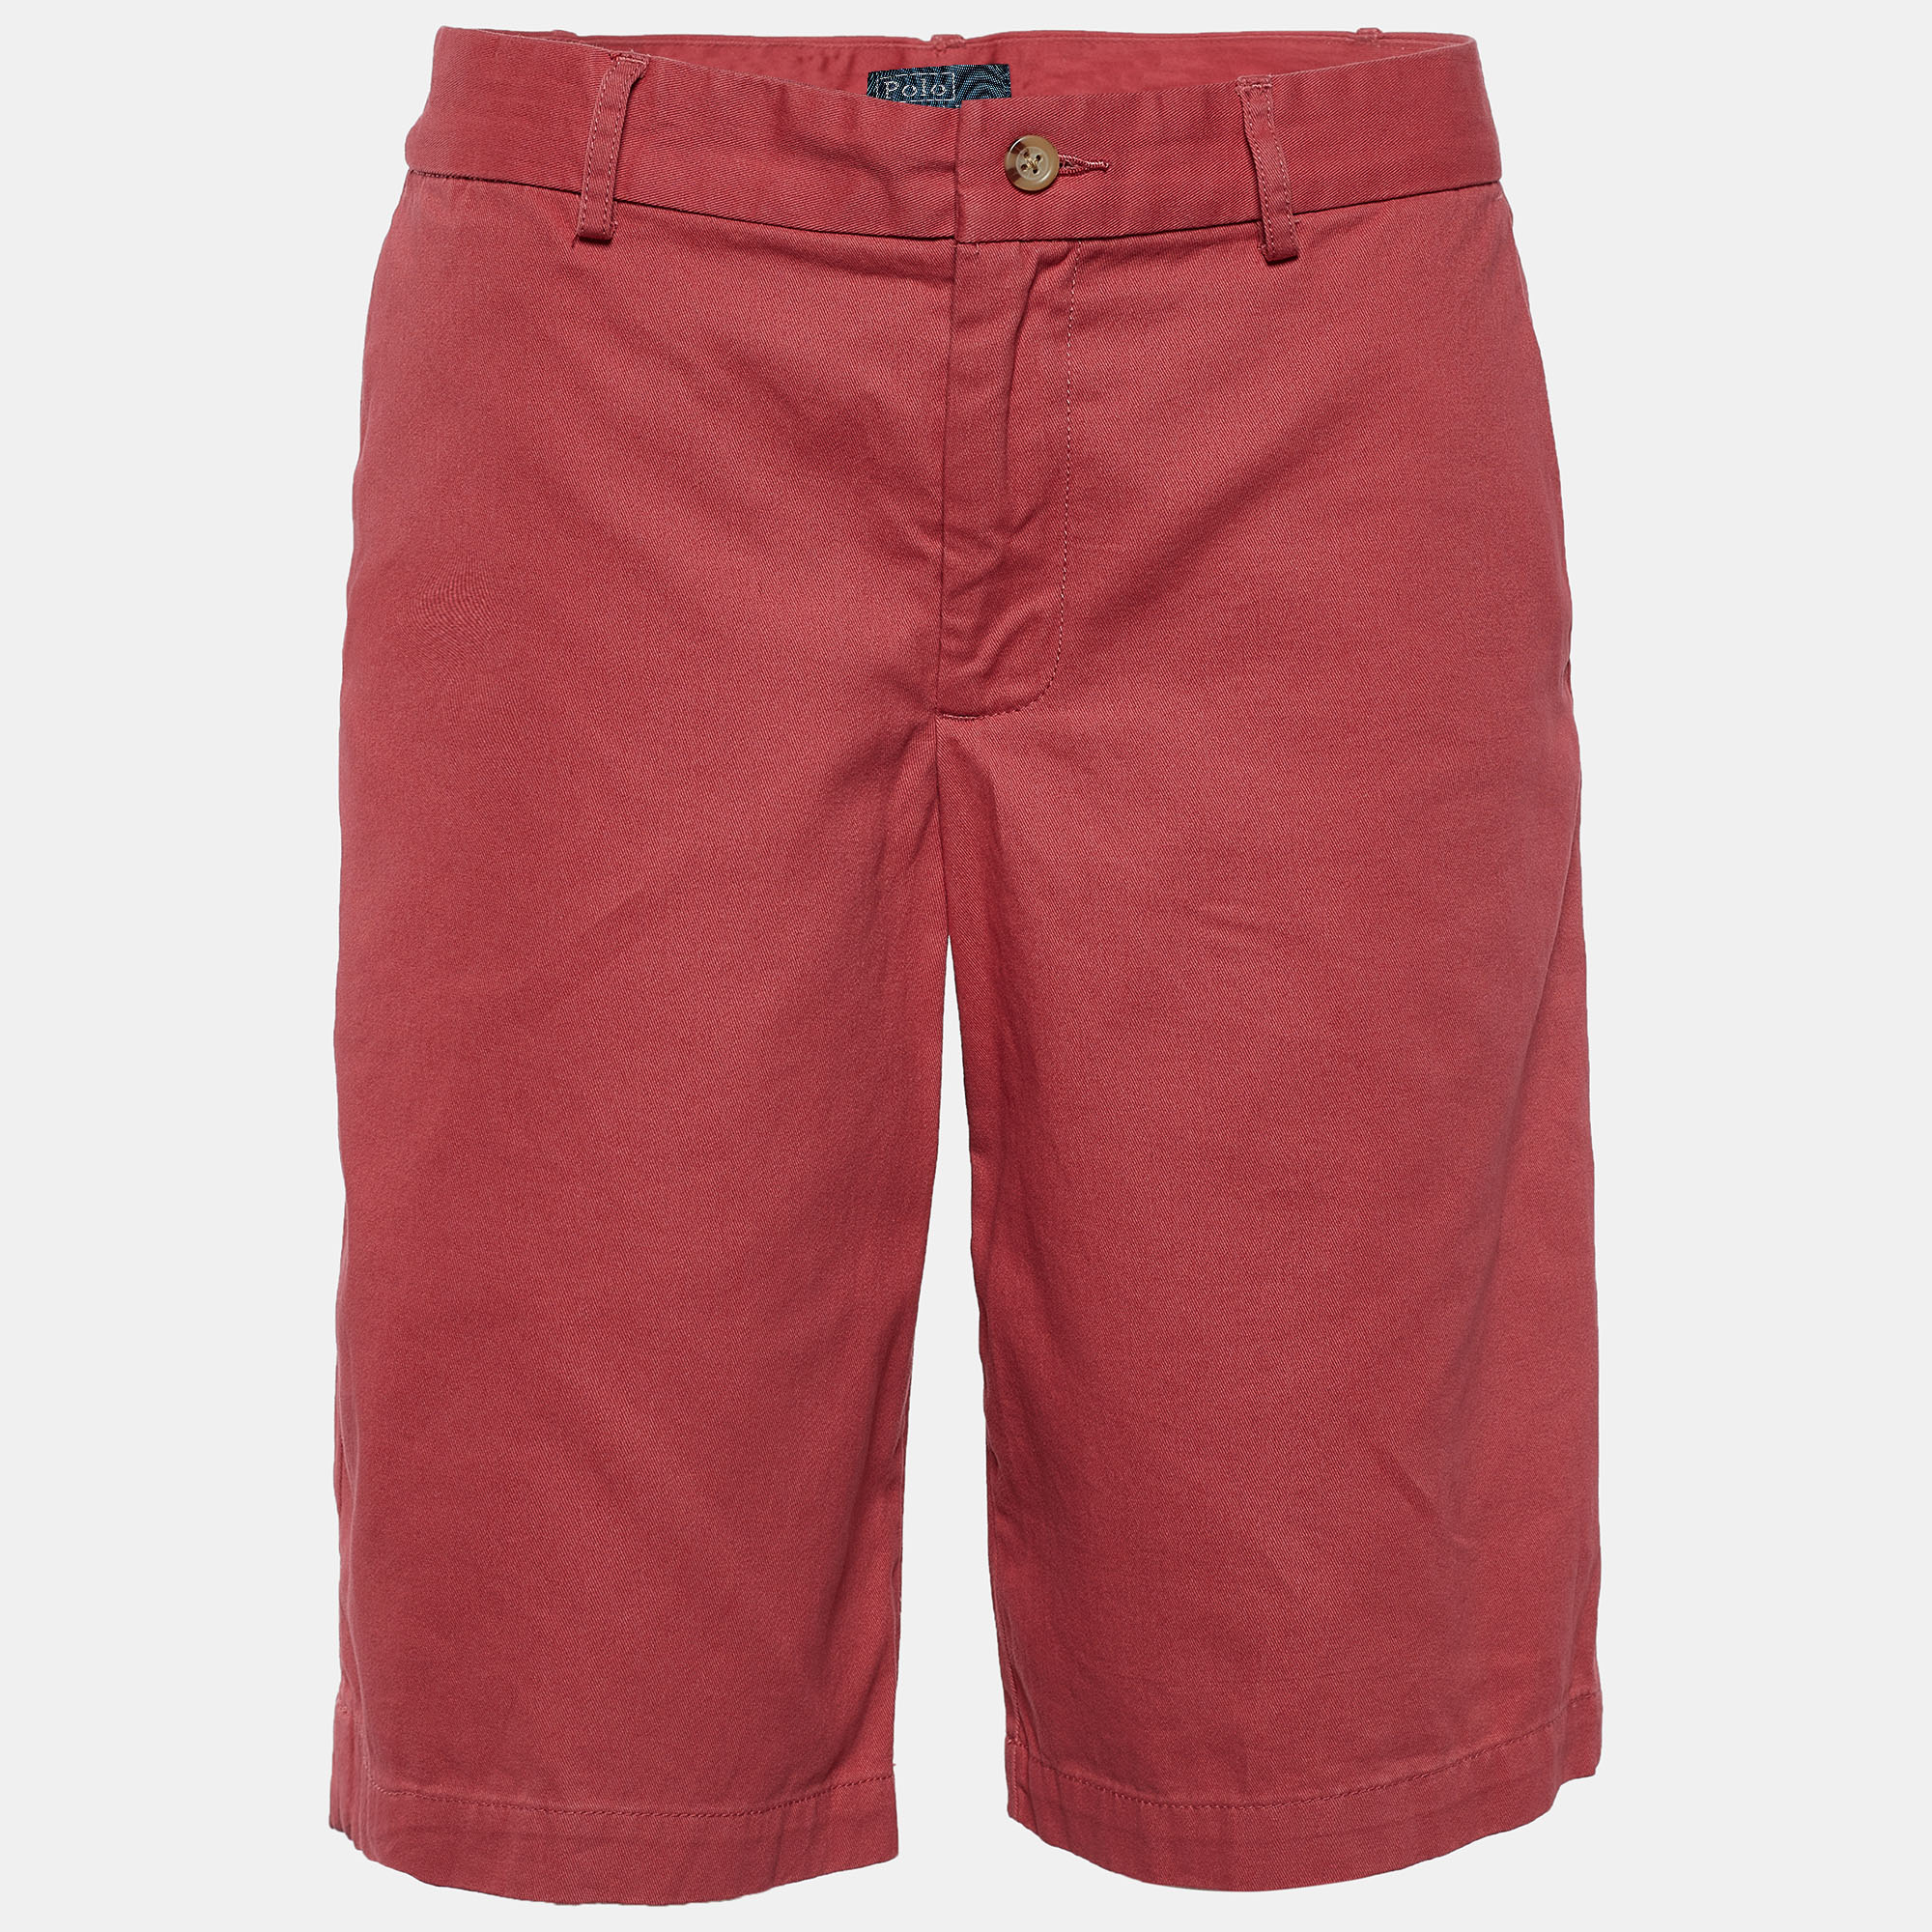 Polo Ralph Lauren Burnt Red Denim Shorts XL